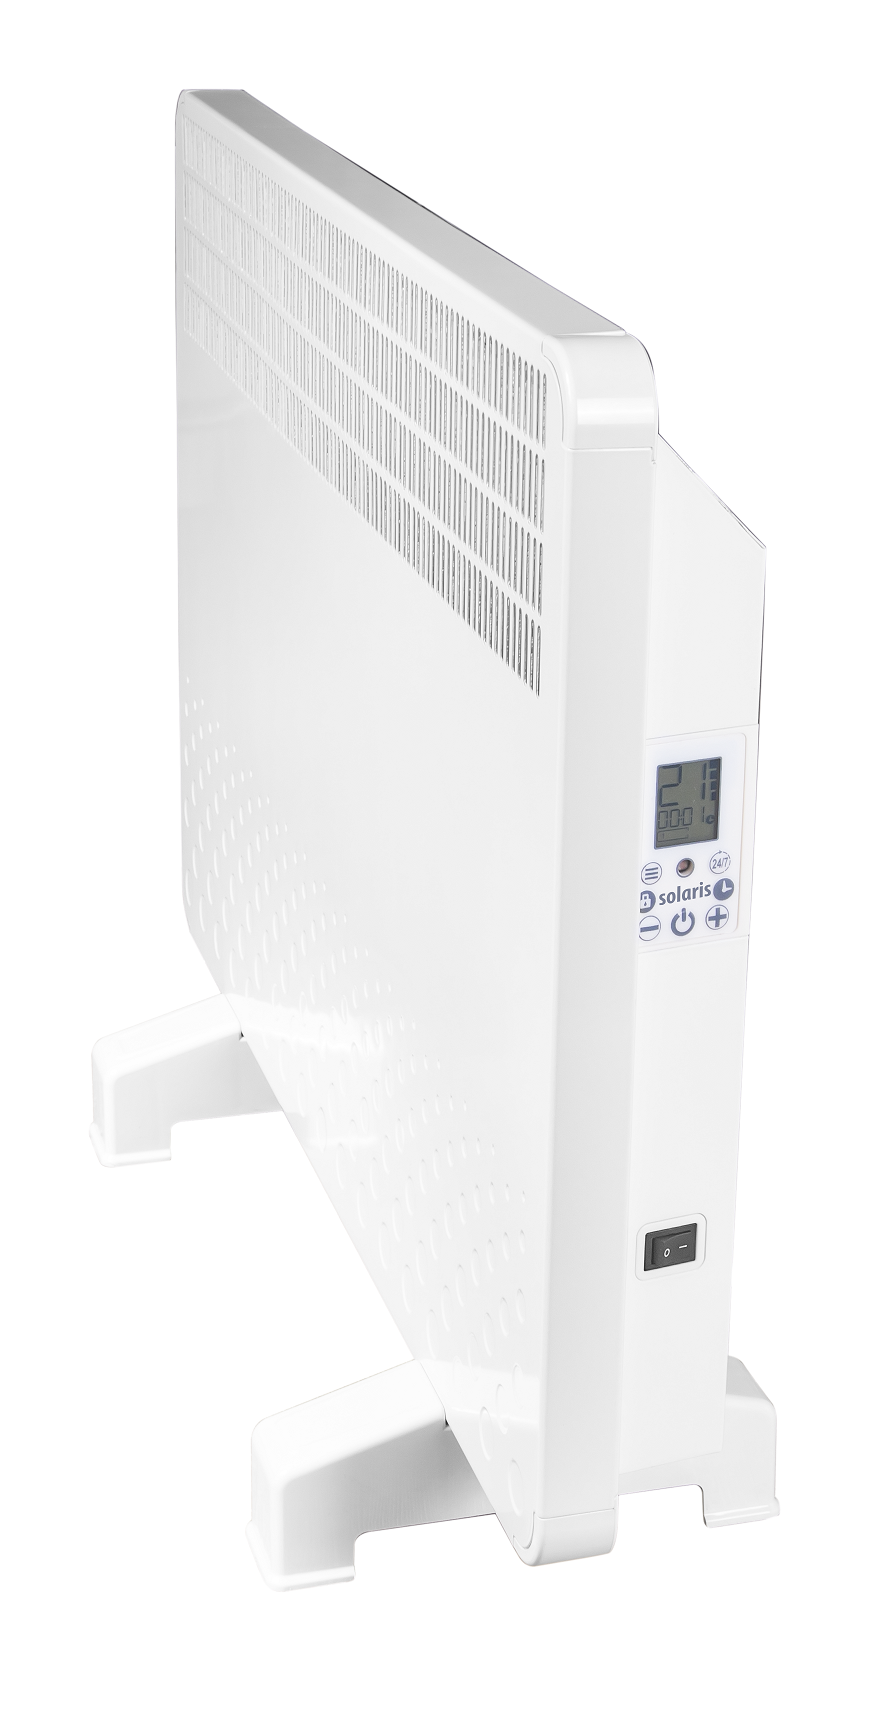 Convector electric de perete sau pardoseala Solaris KIP 2000 W, control electronic, Termostat de siguranta, termostat reglabil, IP 24, ERP 2018, pentru 24 mp fornello